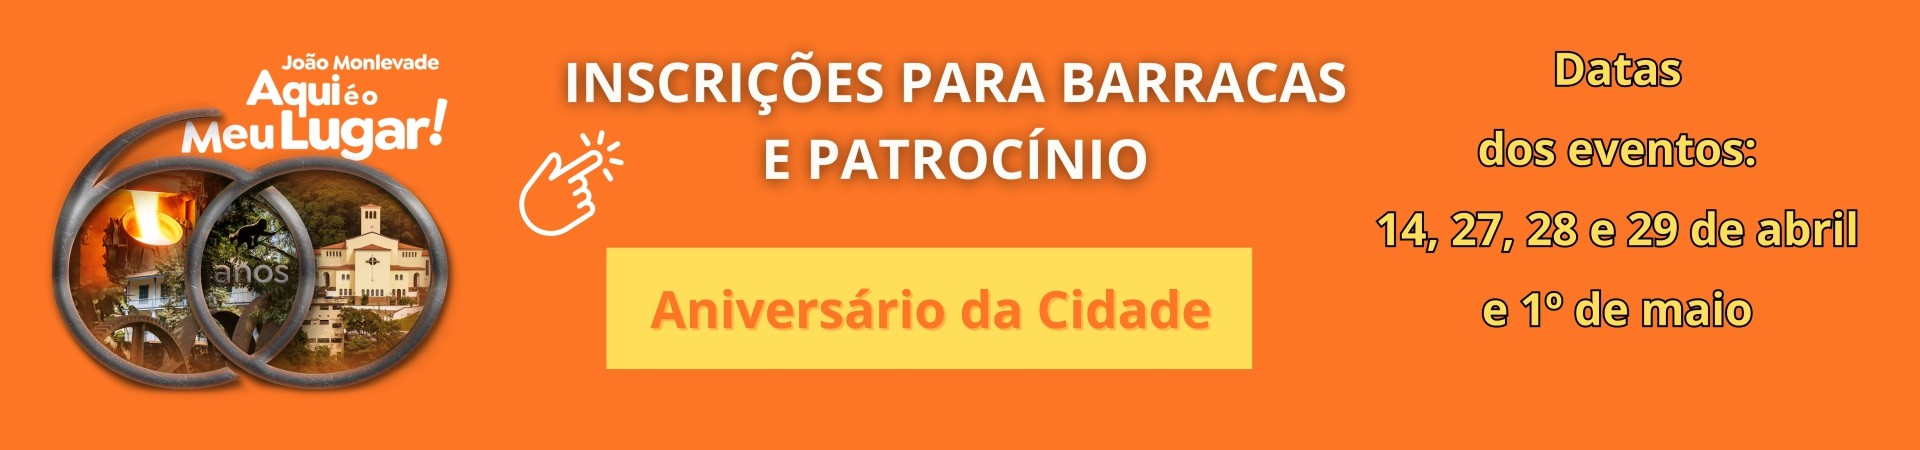 INSCRIÇÕES PARA BARRACAS E PATROCÍNIO - ANIVERSÁRIO DA CIDADE 60 ANOS